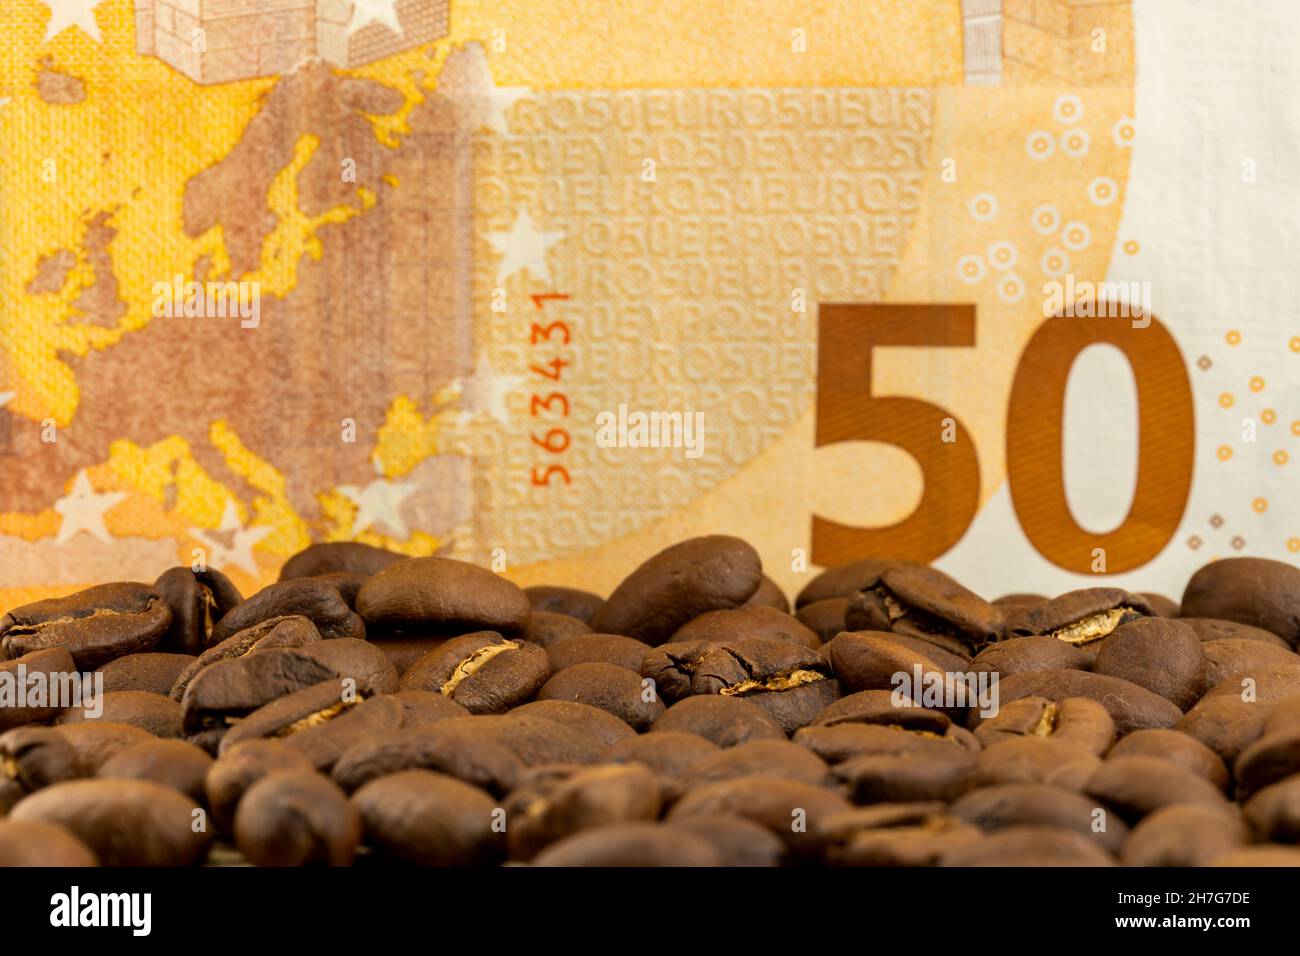 Geröstete Kaffeebohnen zusammen mit 50 Euro Rechnung. Hoher Preis für Kaffee. Pictute in gutem Kunstlicht aufgenommen. Stockfoto